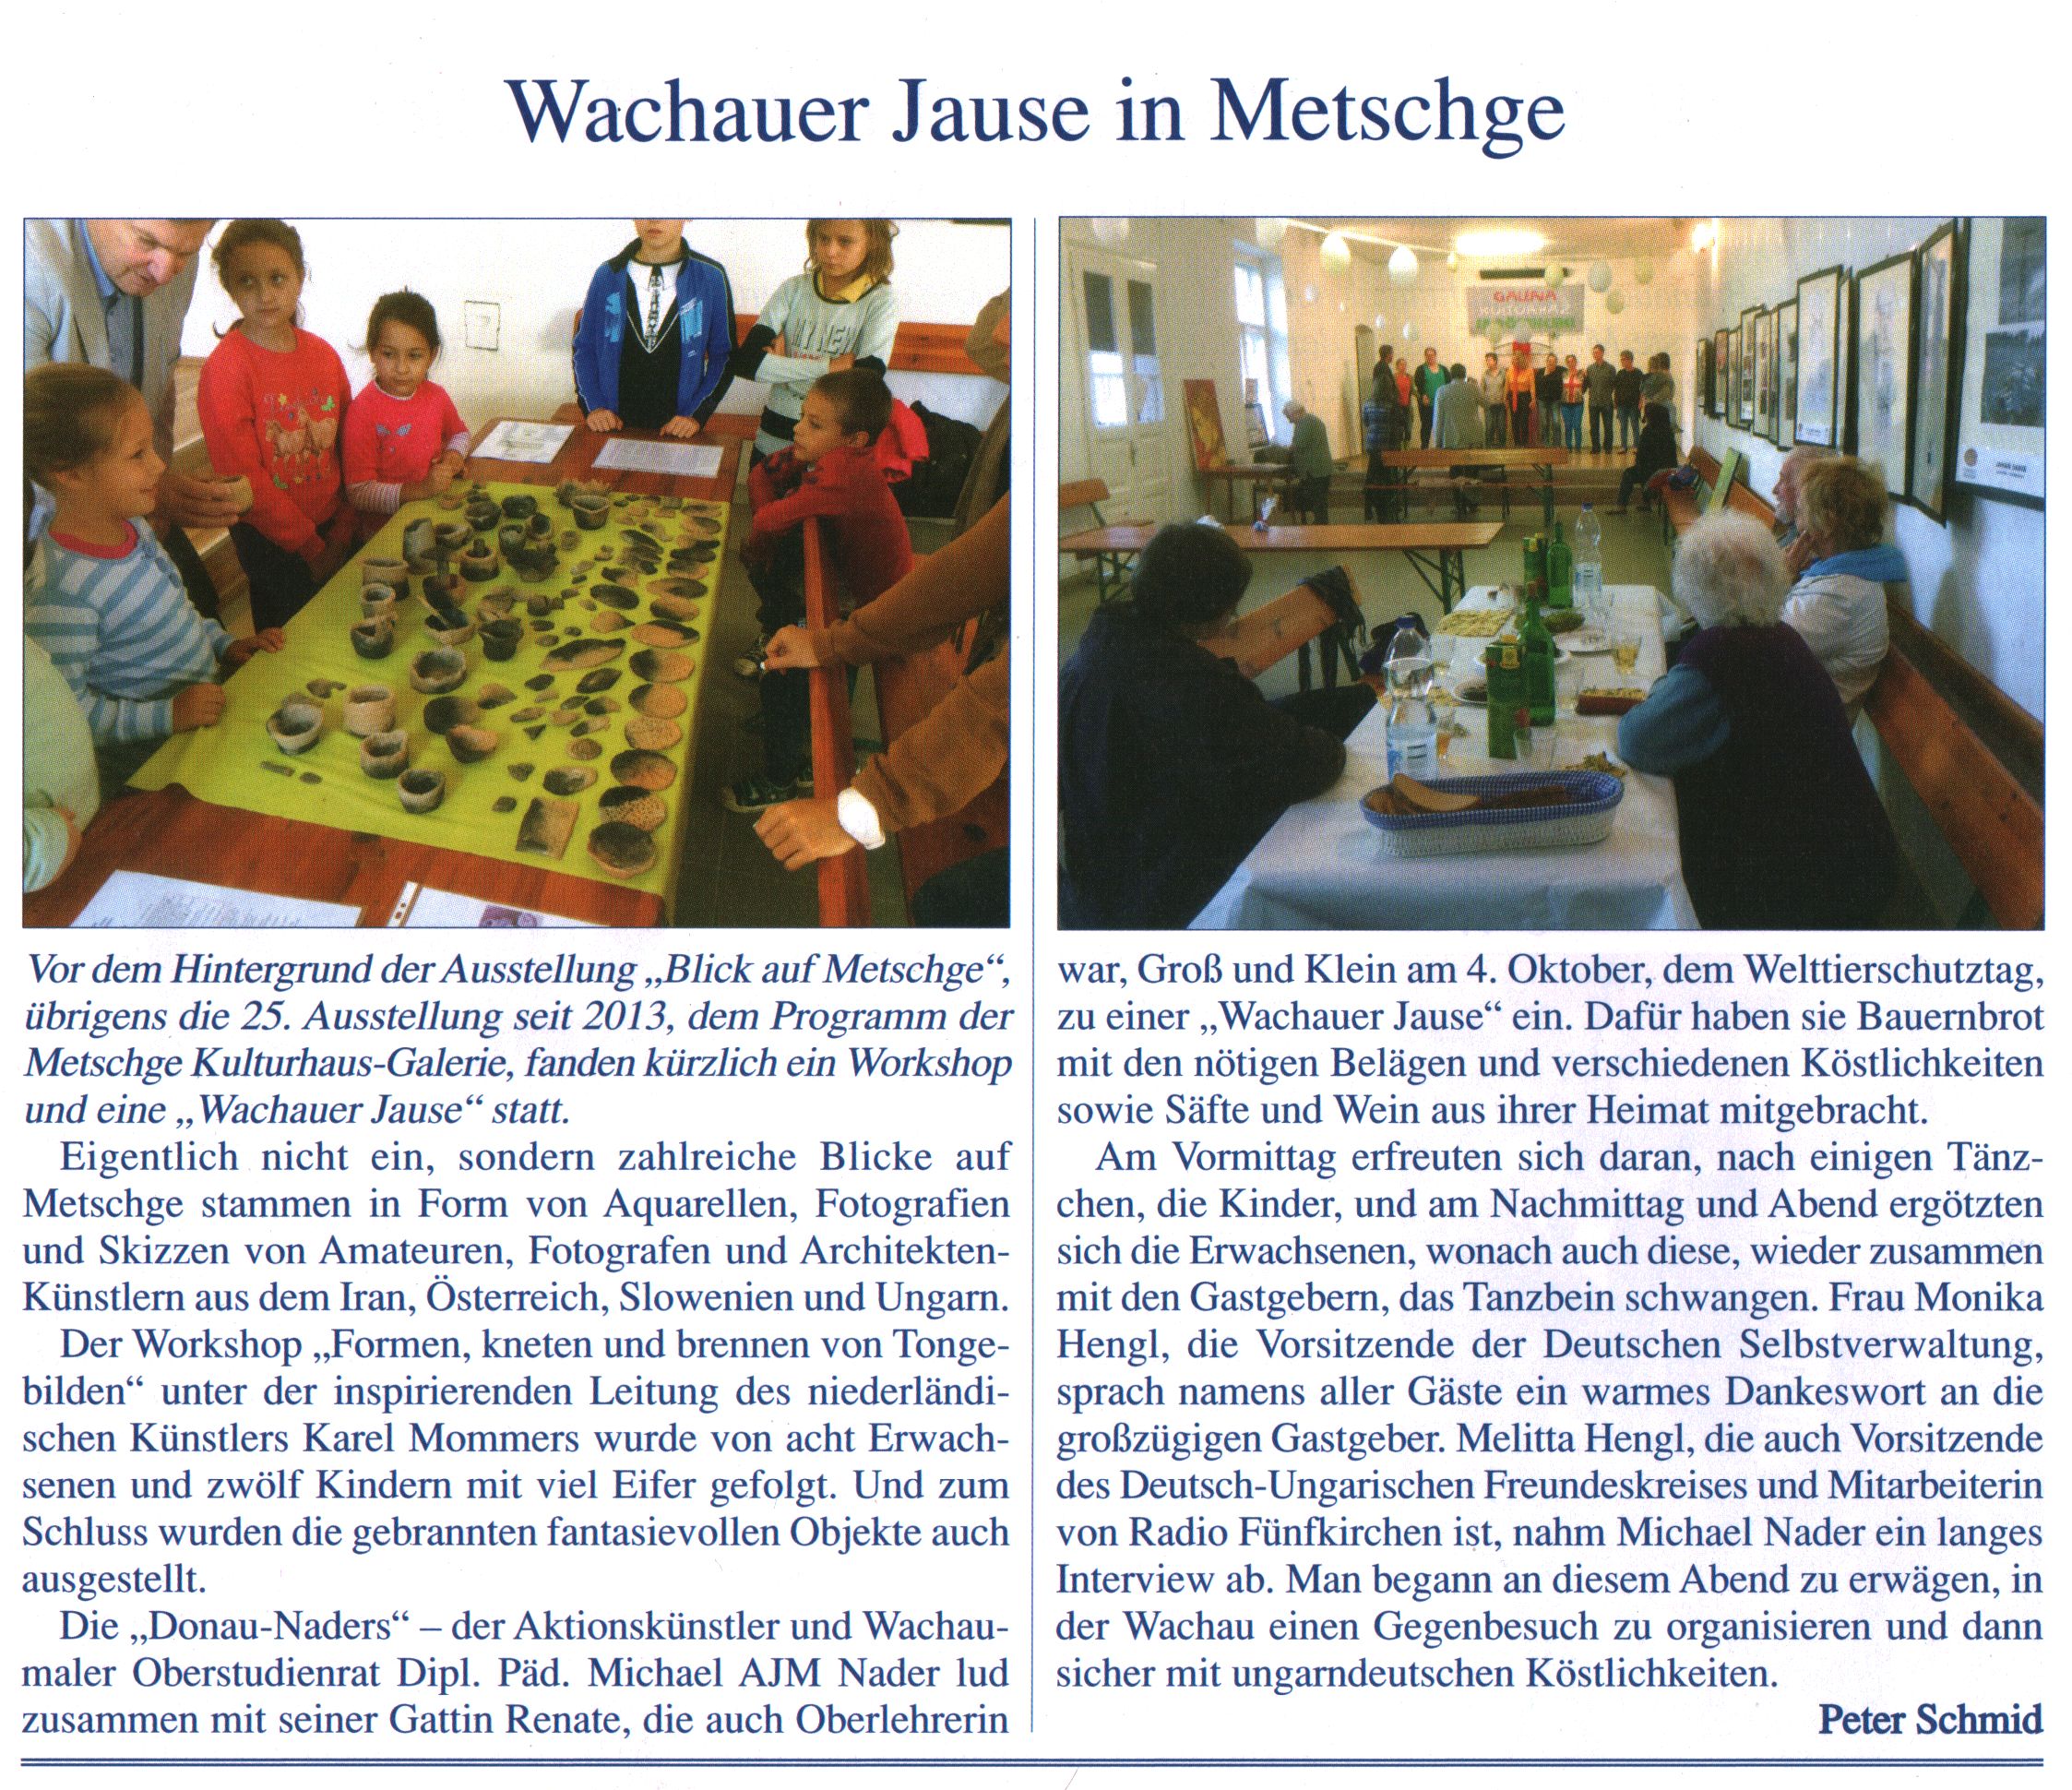 Wachauer Jause in Metschge